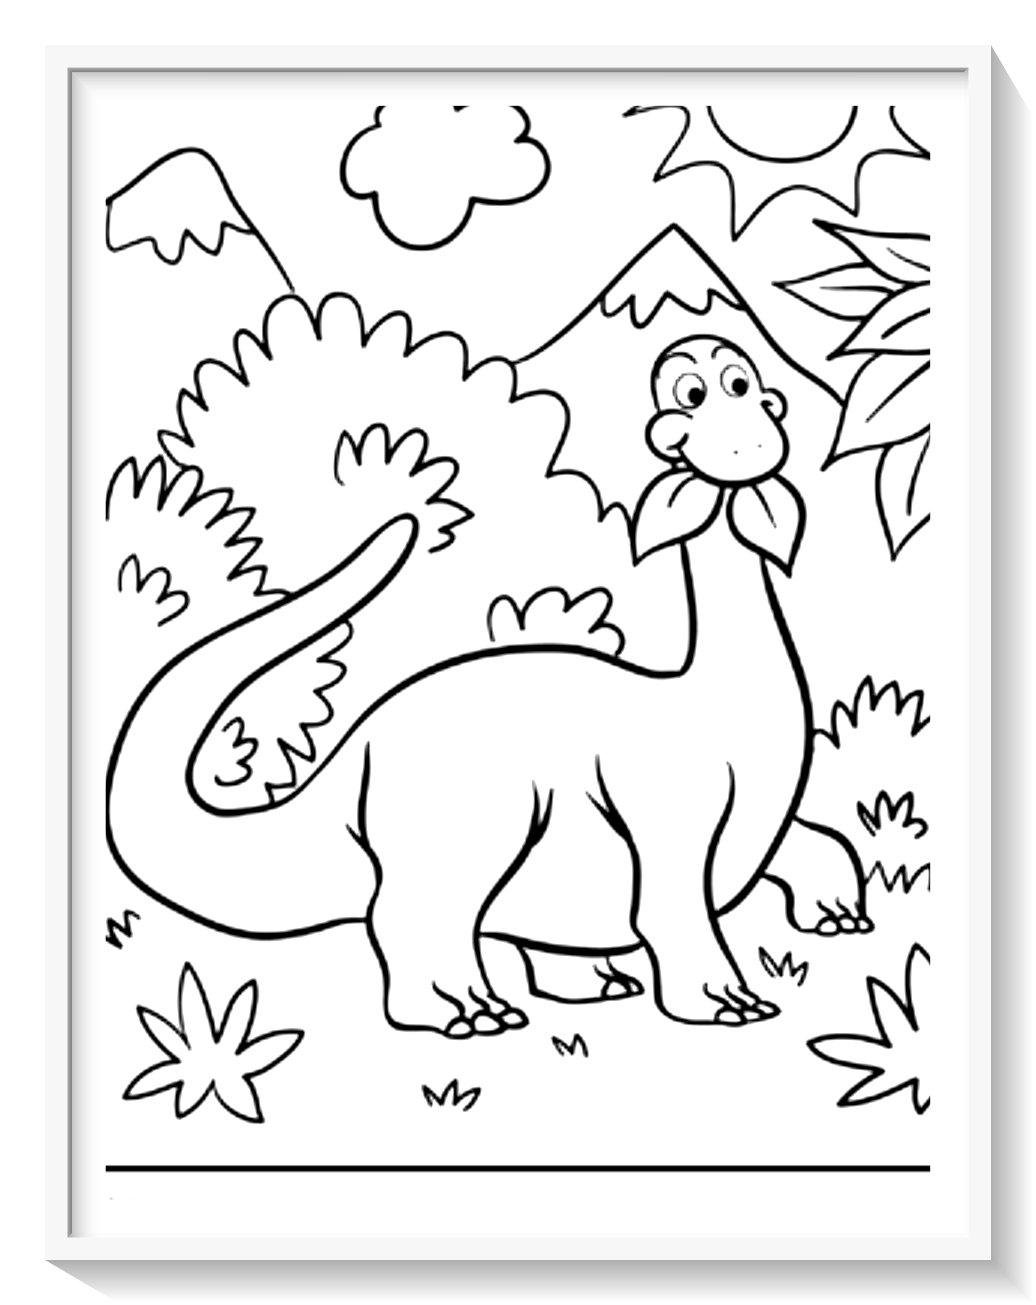 juegos de pintar dinosaurios pais delos juegos